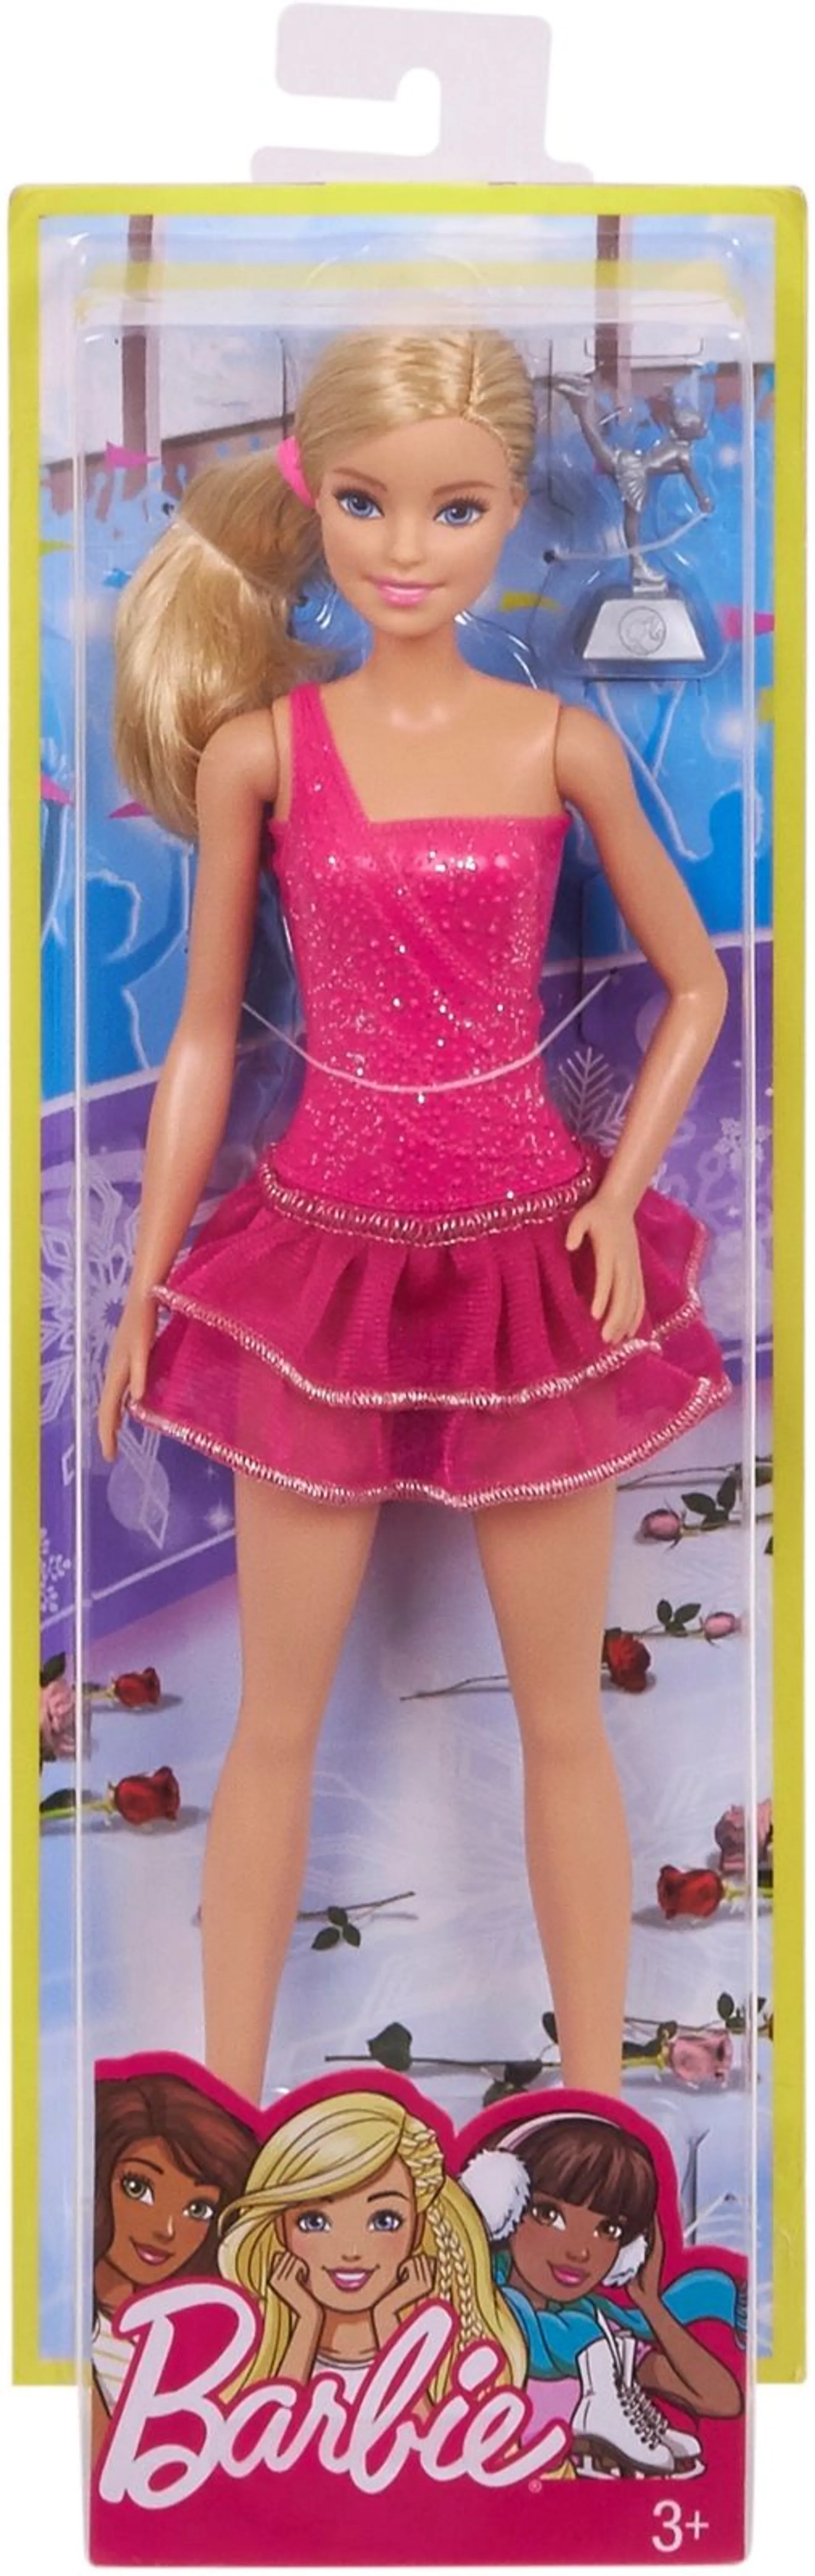 Barbie Careers nukke eri ammateilla - 5